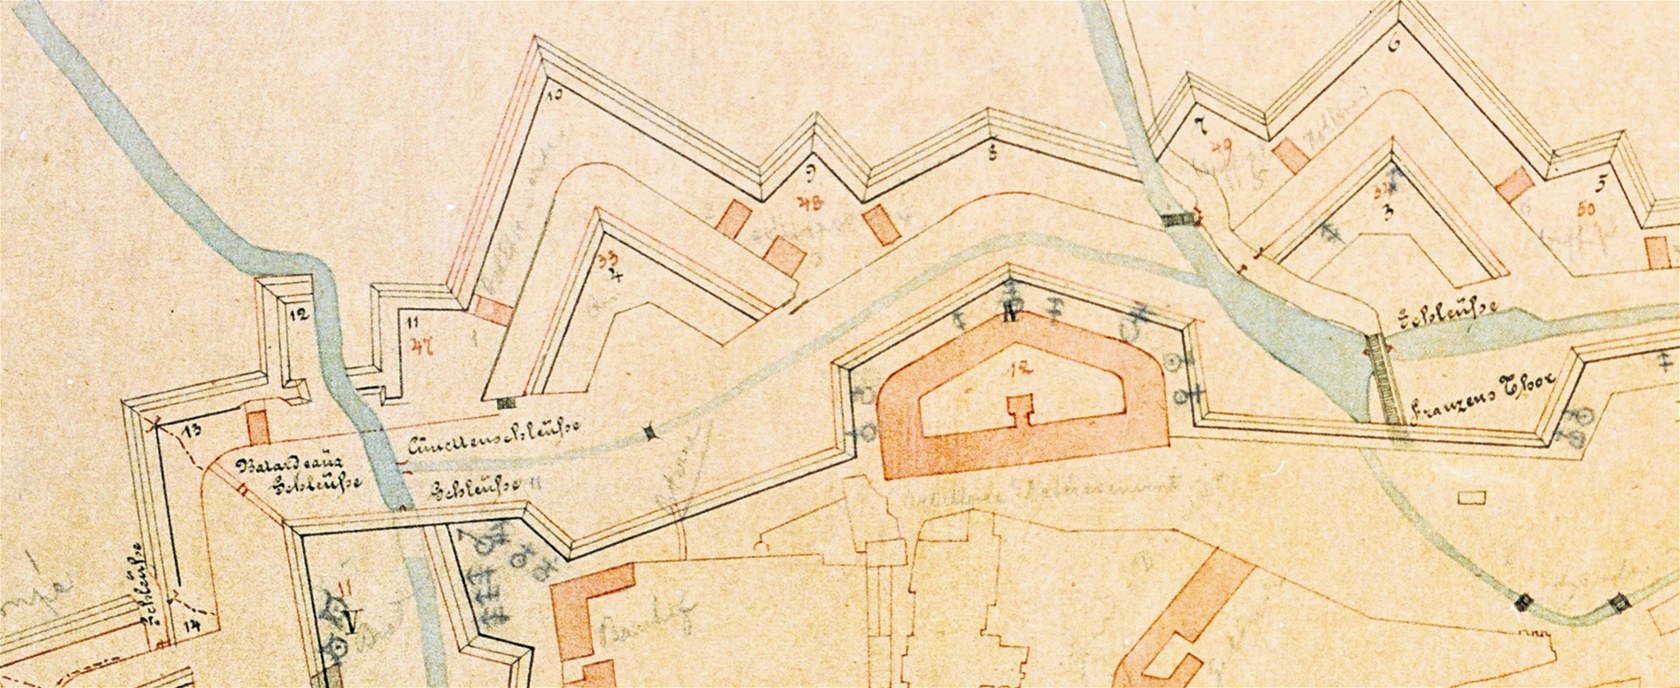 Plán olomoucké pevnosti z roku 1876 ukazuje Malou Moravu pi ústí do Olomouce.